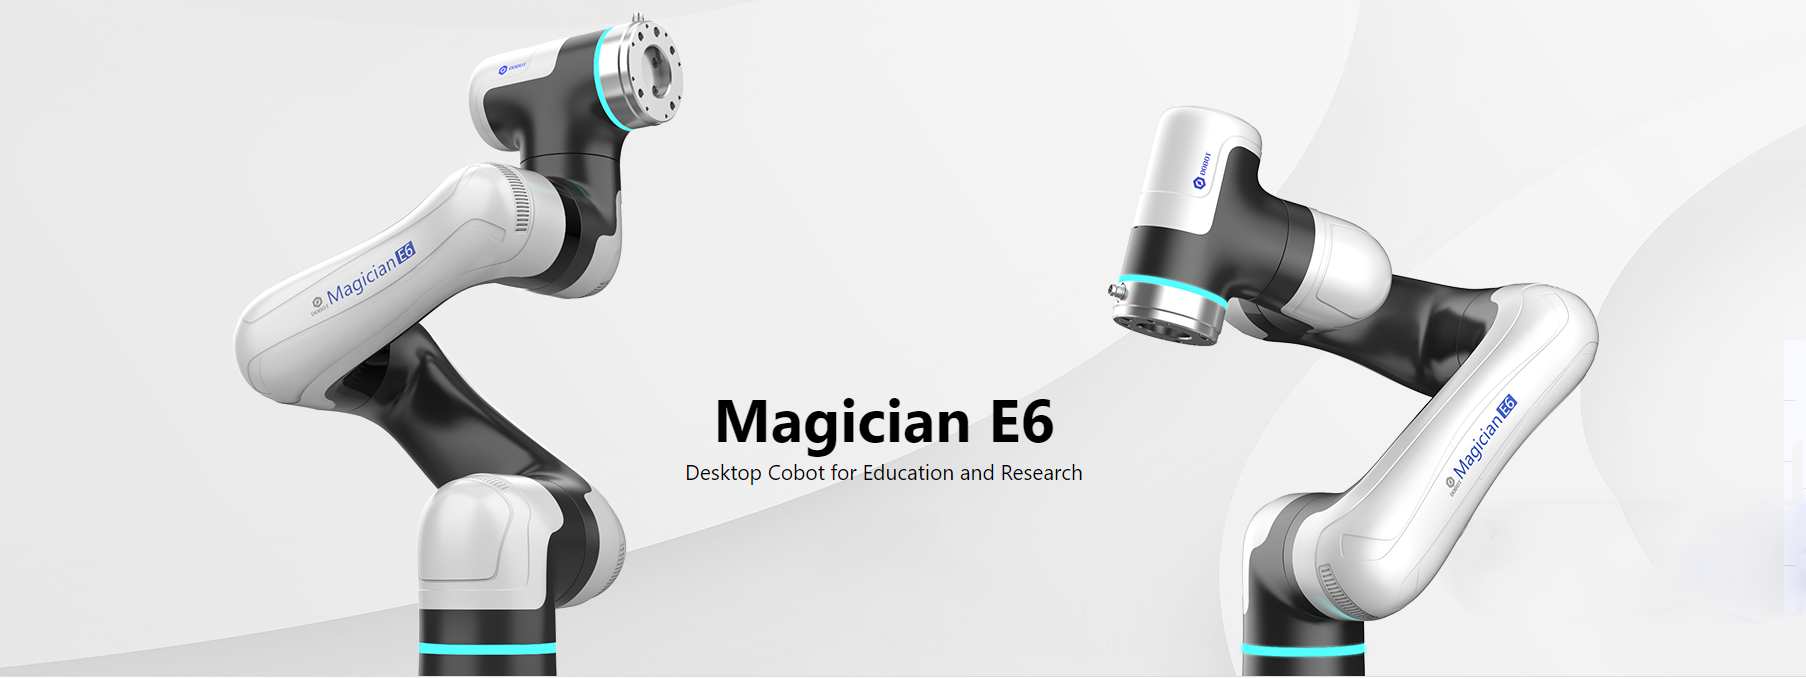 Dobot Magician E6